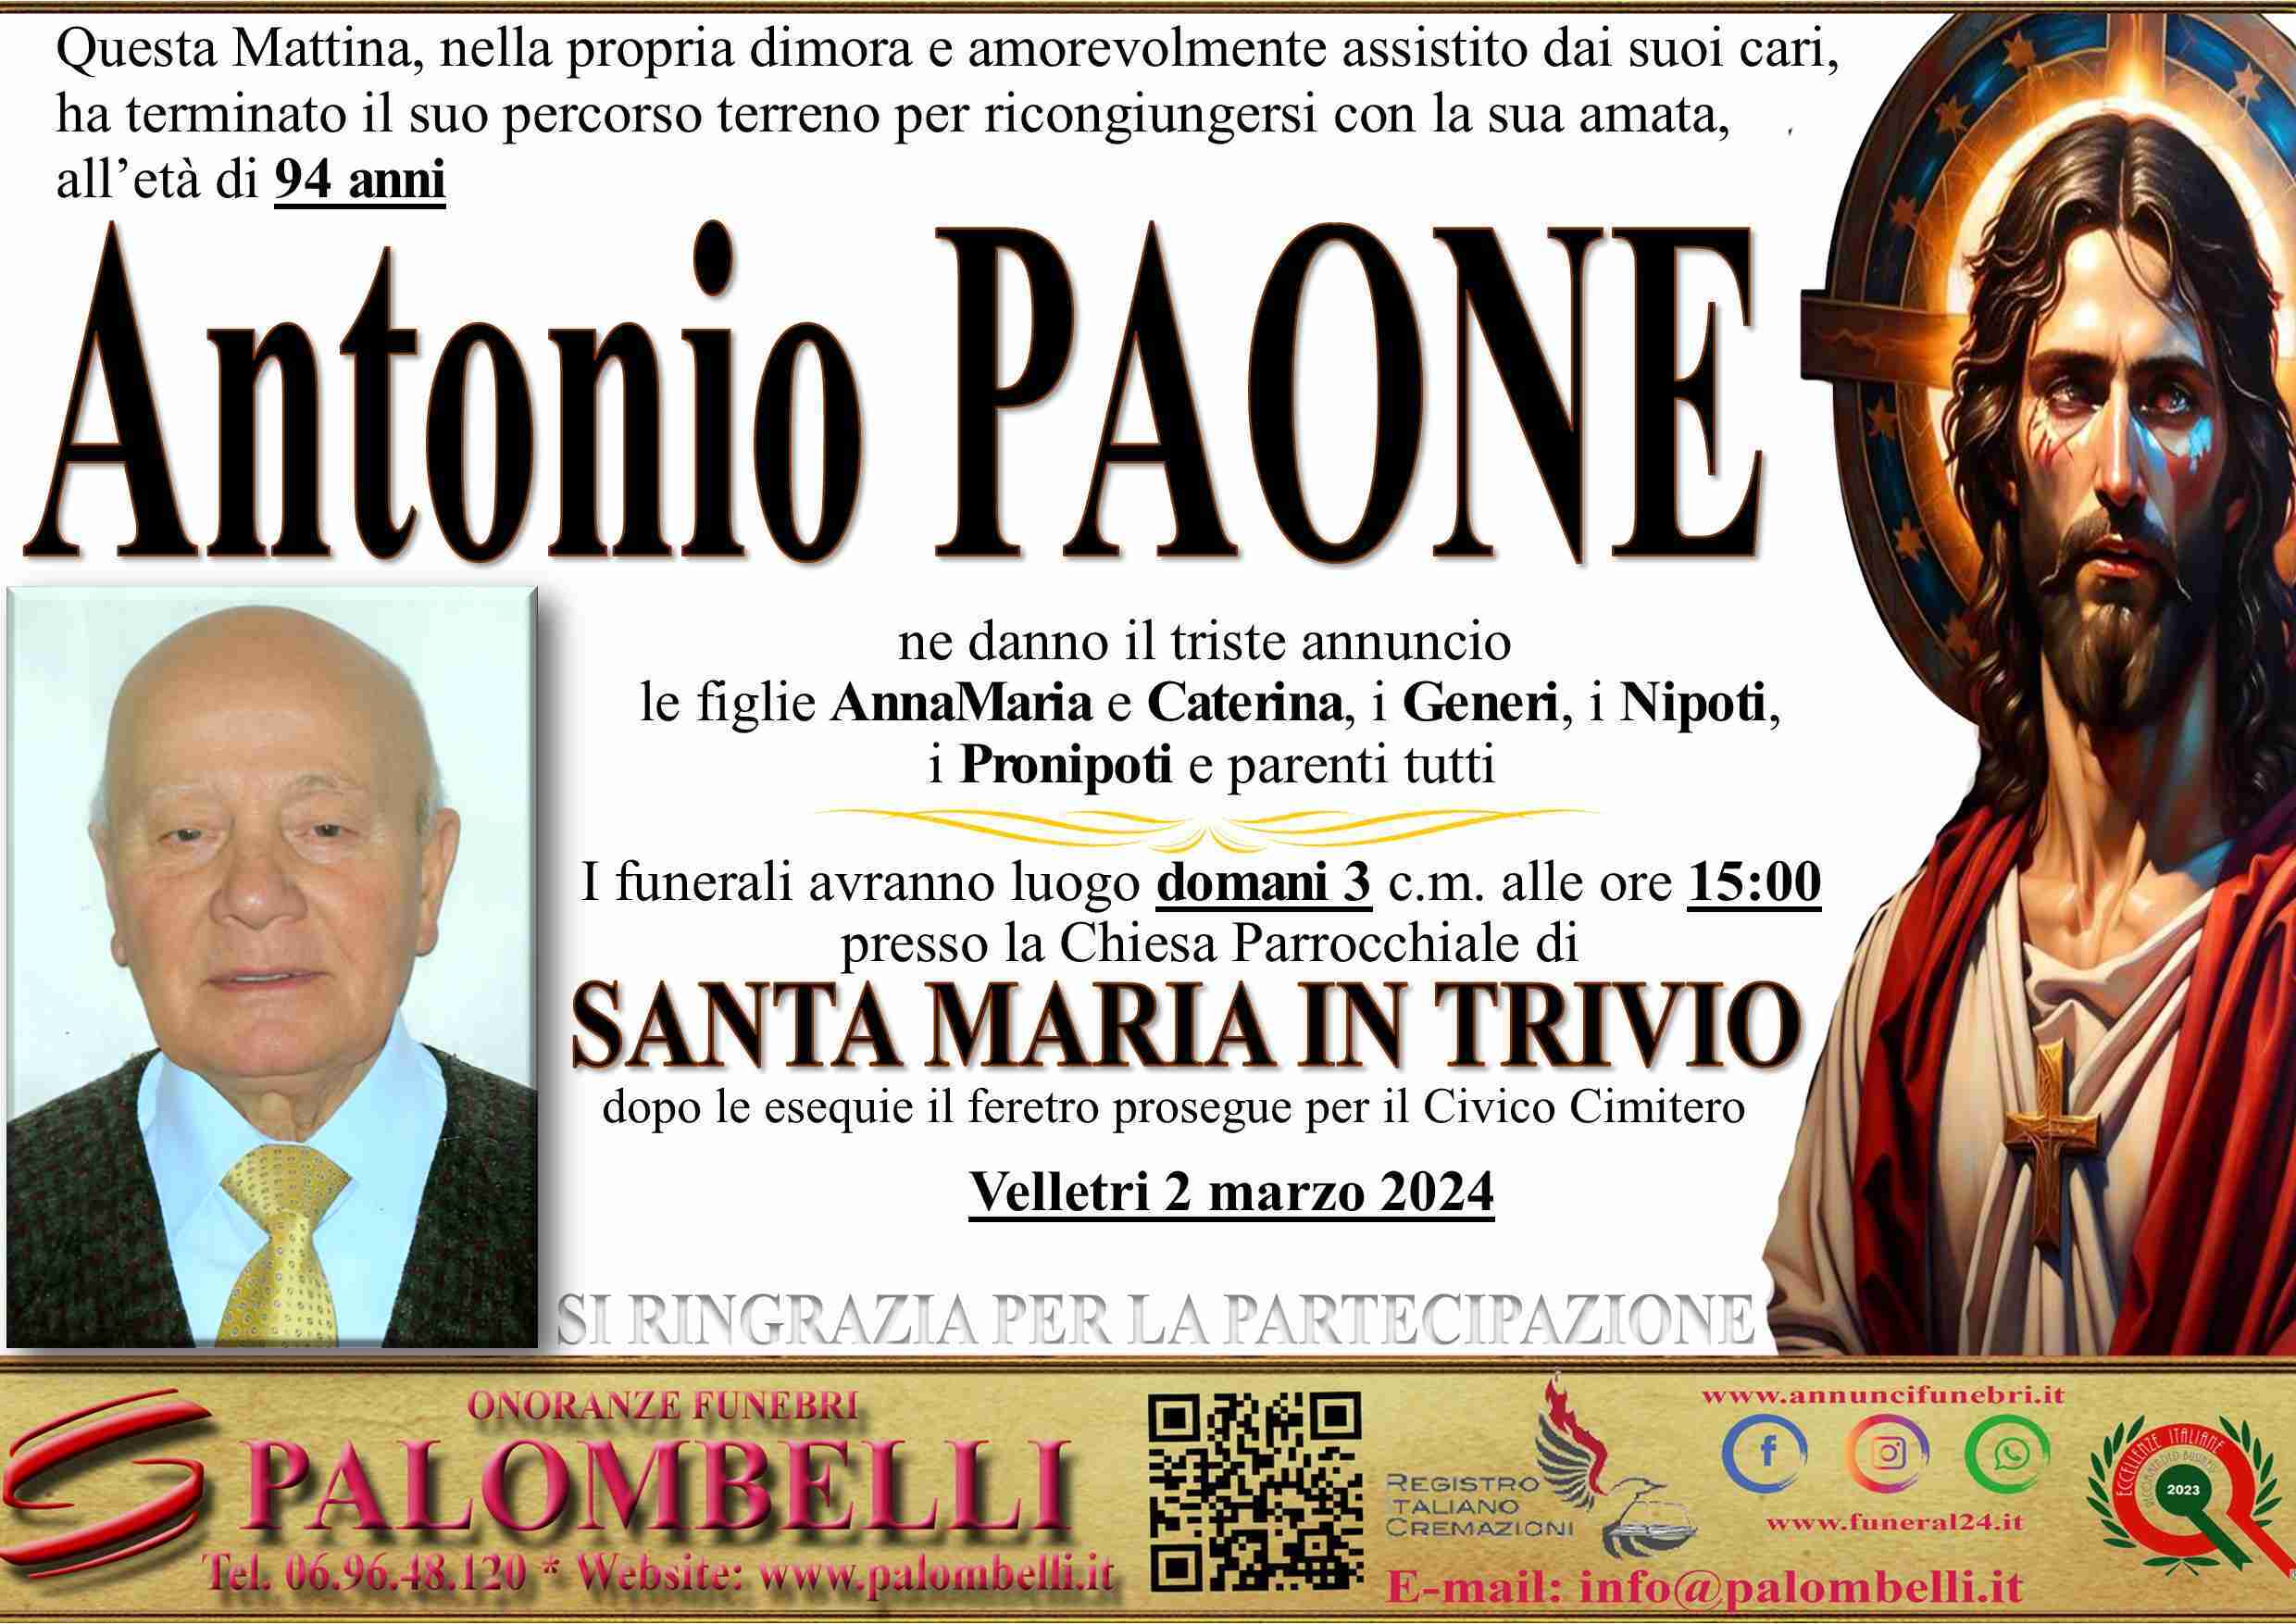 Antonio Paone